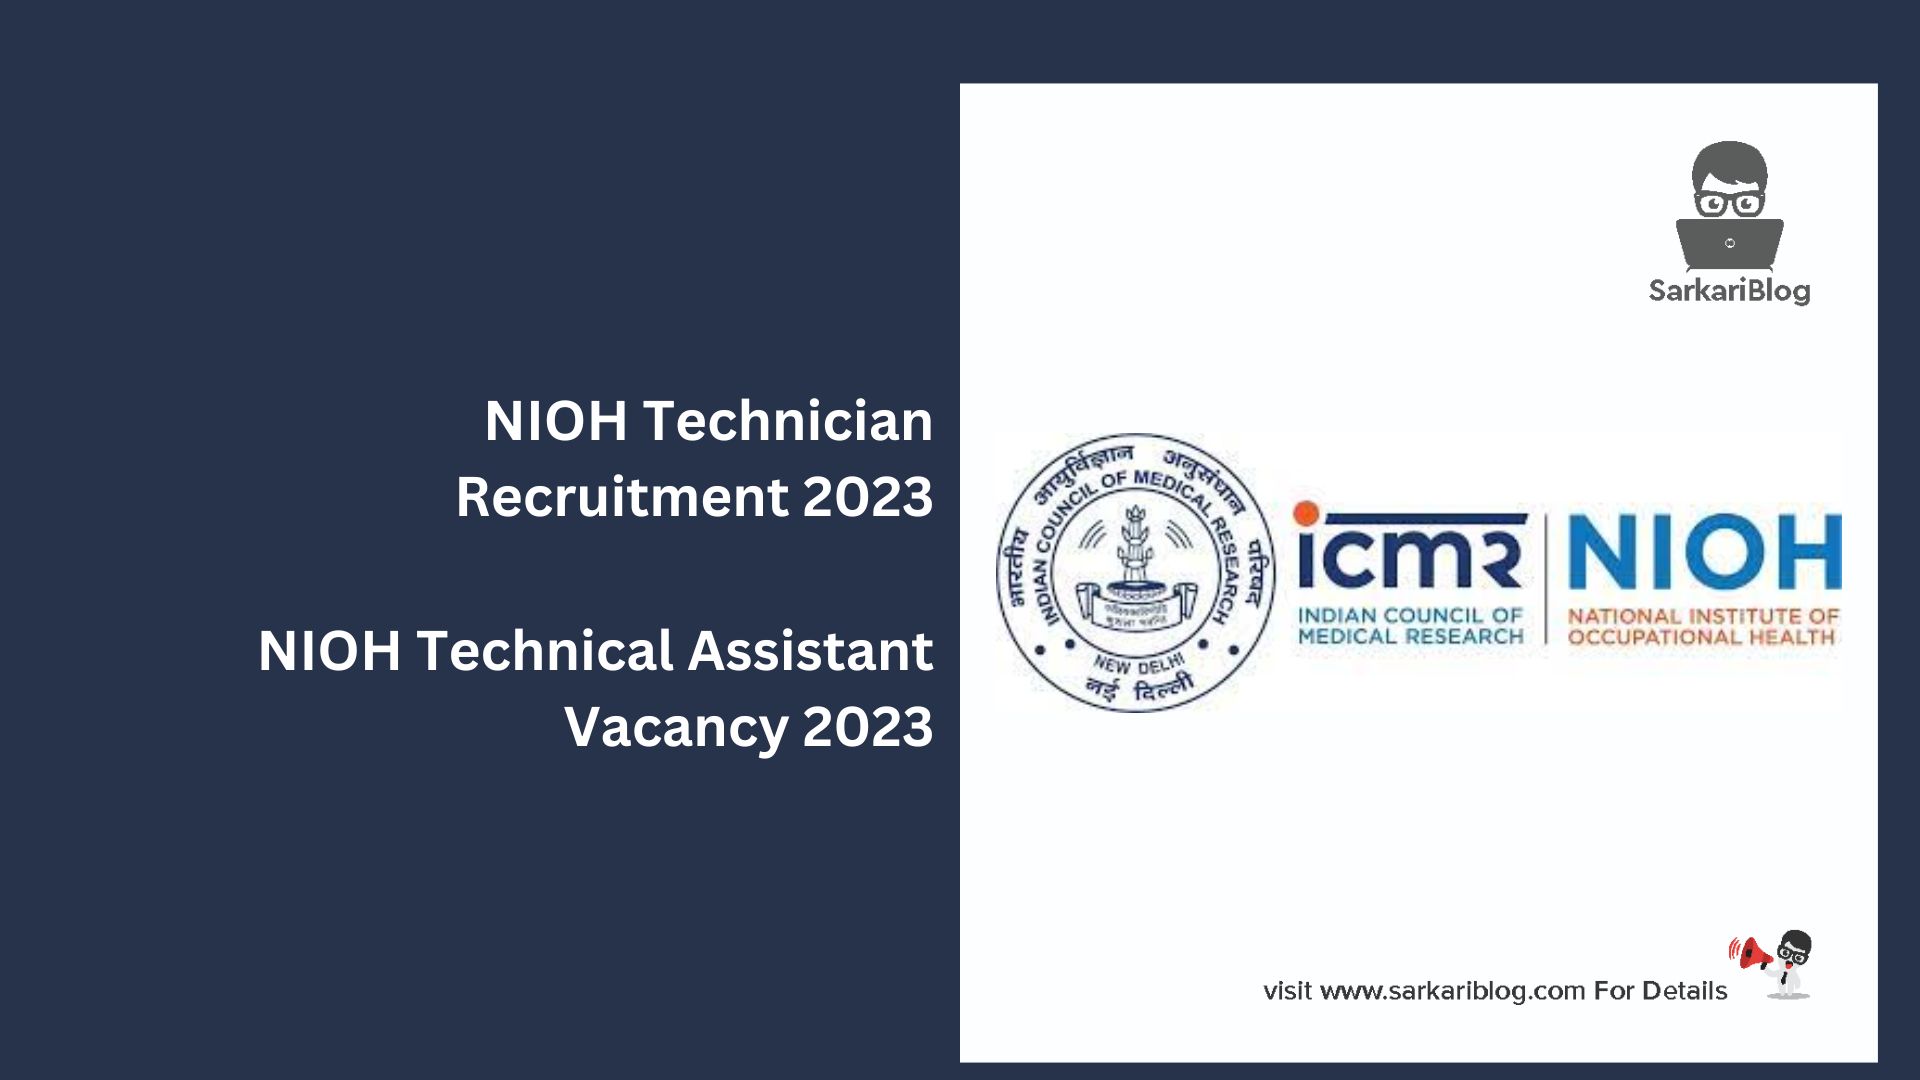 NIOH Technician Recruitment 2023